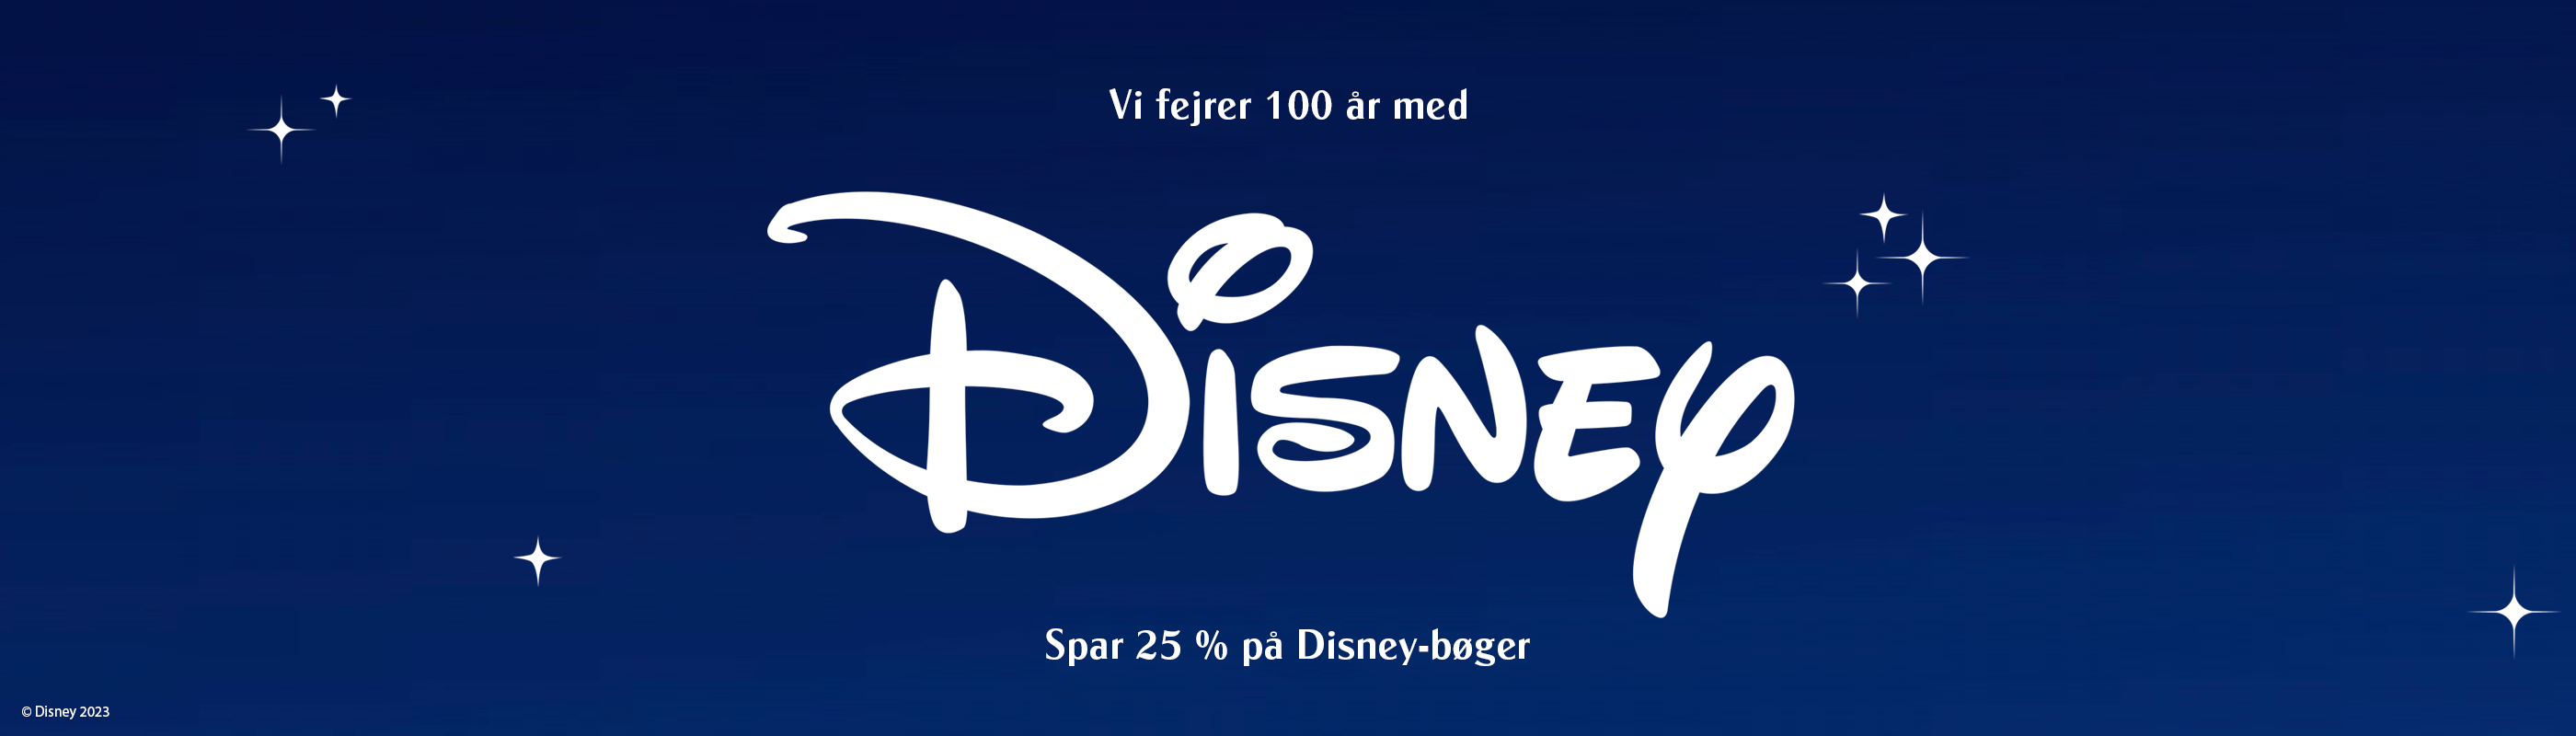 Disney - 100 års fødselsdag!